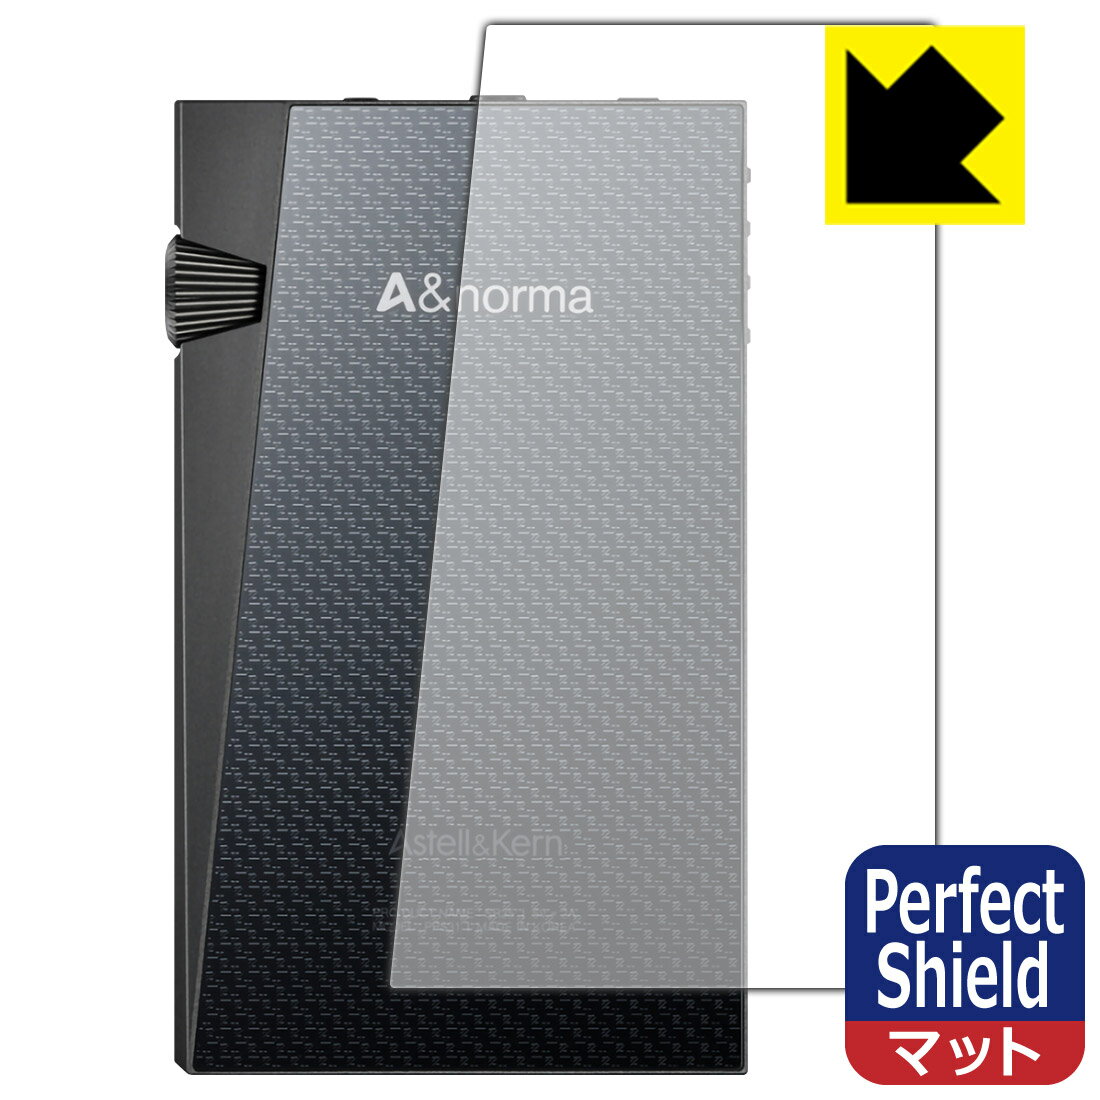 ●対応機種 : Astell&Kern A&normaシリーズ SR35専用の商品です。●製品内容 : 背面用フィルム1枚・クリーニングワイプ1個●「Perfect Shield」は画面の反射を抑え、指のすべりもなめらかな指紋や皮脂汚れがつきにくい『アンチグレアタイプ(非光沢)の保護フィルム』●安心の国産素材を使用。日本国内の自社工場で製造し出荷しています。 ★貼り付け失敗交換サービス対象商品★【ポスト投函送料無料】商品は【ポスト投函発送 (追跡可能メール便)】で発送します。お急ぎ、配達日時を指定されたい方は以下のクーポンを同時購入ください。【お急ぎ便クーポン】　プラス110円(税込)で速達扱いでの発送。お届けはポストへの投函となります。【配達日時指定クーポン】　プラス550円(税込)で配達日時を指定し、宅配便で発送させていただきます。【お急ぎ便クーポン】はこちらをクリック【配達日時指定クーポン】はこちらをクリック 　 表面に微細な凹凸を作ることにより、外光を乱反射させギラツキを抑える「アンチグレア加工」がされております。 屋外での太陽光の映り込み、屋内でも蛍光灯などの映り込みが気になるシーンが多い方におすすめです。 また、指紋がついた場合でも目立ちにくいという特長があります。 指滑りはさらさらな使用感でストレスのない操作・入力が可能です。 ハードコート加工がされており、キズや擦れに強くなっています。簡単にキズがつかず長くご利用いただけます。 反射防止のアンチグレア加工で指紋が目立ちにくい上、表面は防汚コーティングがされており、皮脂や汚れがつきにくく、また、落ちやすくなっています。 接着面は気泡の入りにくい特殊な自己吸着タイプです。素材に柔軟性があり、貼り付け作業も簡単にできます。また、はがすときにガラス製フィルムのように割れてしまうことはありません。 貼り直しが何度でもできるので、正しい位置へ貼り付けられるまでやり直すことができます。 最高級グレードの国産素材を日本国内の弊社工場で加工している完全な Made in Japan です。安心の品質をお届けします。 使用上の注意 ●本製品は機器の画面をキズなどから保護するフィルムです。他の目的にはご使用にならないでください。 ●本製品は液晶保護および機器本体を完全に保護することを保証するものではありません。機器の破損、損傷、故障、その他損害につきましては一切の責任を負いかねます。 ●製品の性質上、画面操作の反応が変化したり、表示等が変化して見える場合がございます。 ●貼り付け作業時の失敗(位置ズレ、汚れ、ゆがみ、折れ、気泡など)および取り外し作業時の破損、損傷などについては、一切の責任を負いかねます。 ●水に濡れた状態でのご使用は吸着力の低下などにより、保護フィルムがはがれてしまう場合がございます。防水対応の機器でご使用の場合はご注意ください。 ●アルコール類やその他薬剤を本製品に付着させないでください。表面のコーティングや吸着面が変質するおそれがあります。 ●品質向上のため、仕様などを予告なく変更する場合がございますので、予めご了承ください。